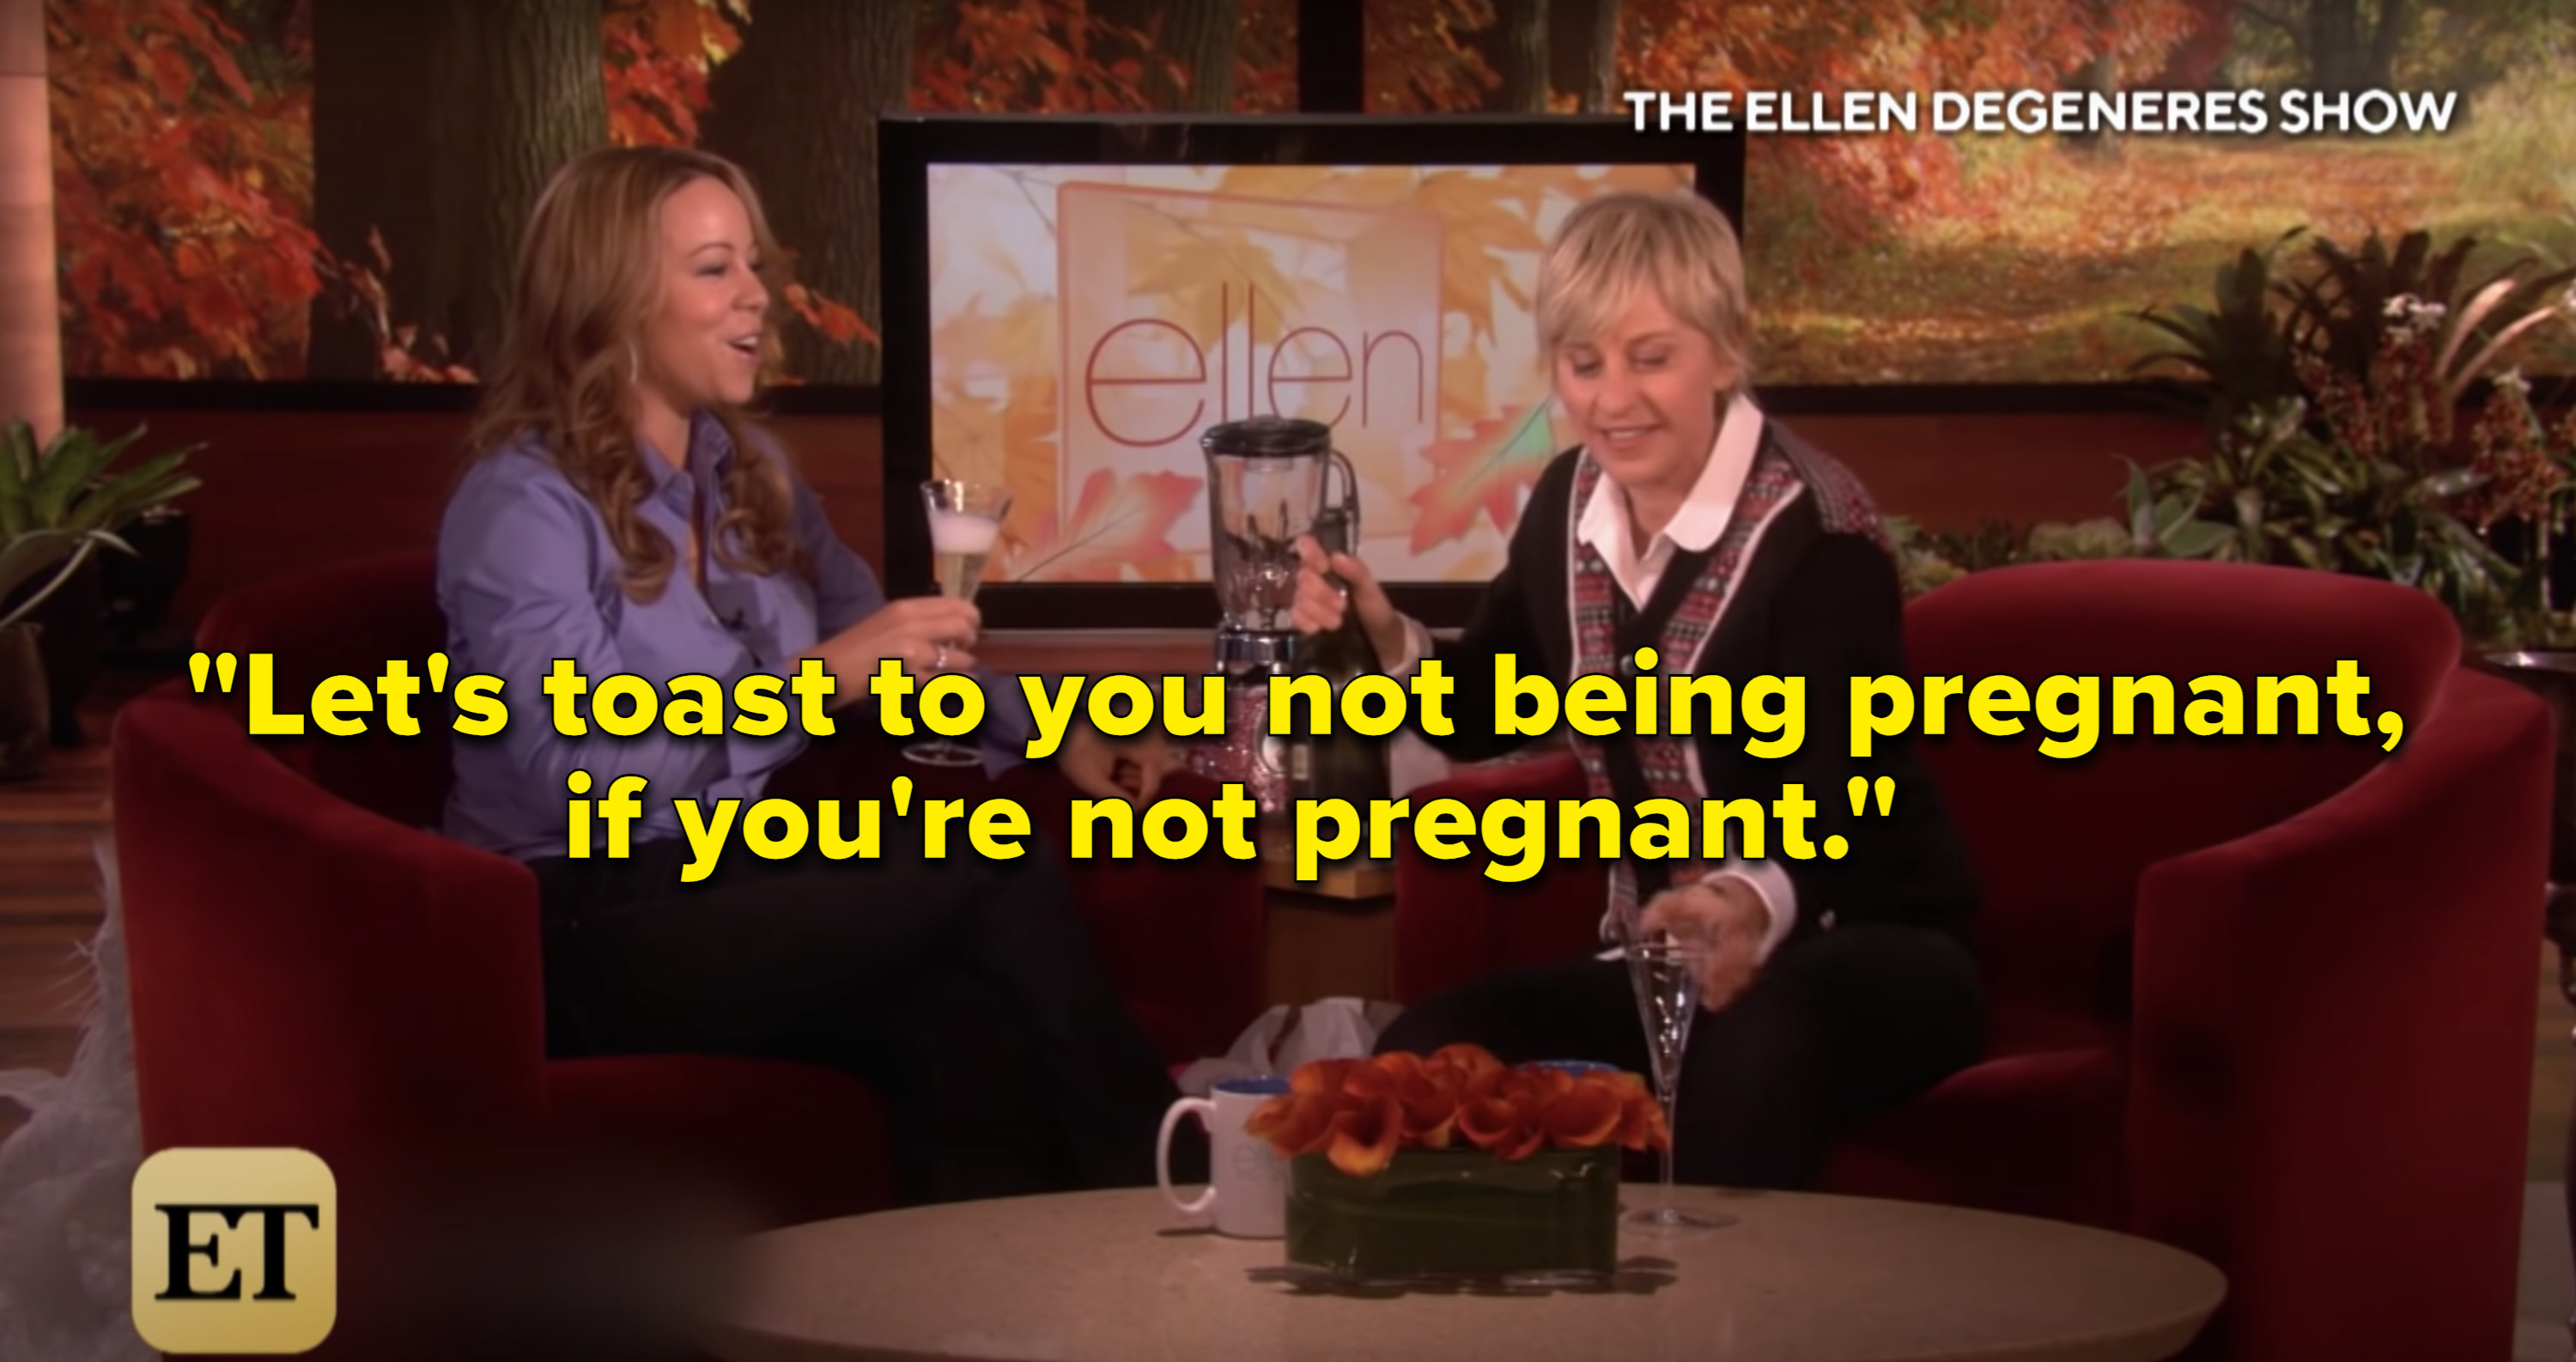 Ellen pressuring Mariah to drink champagne